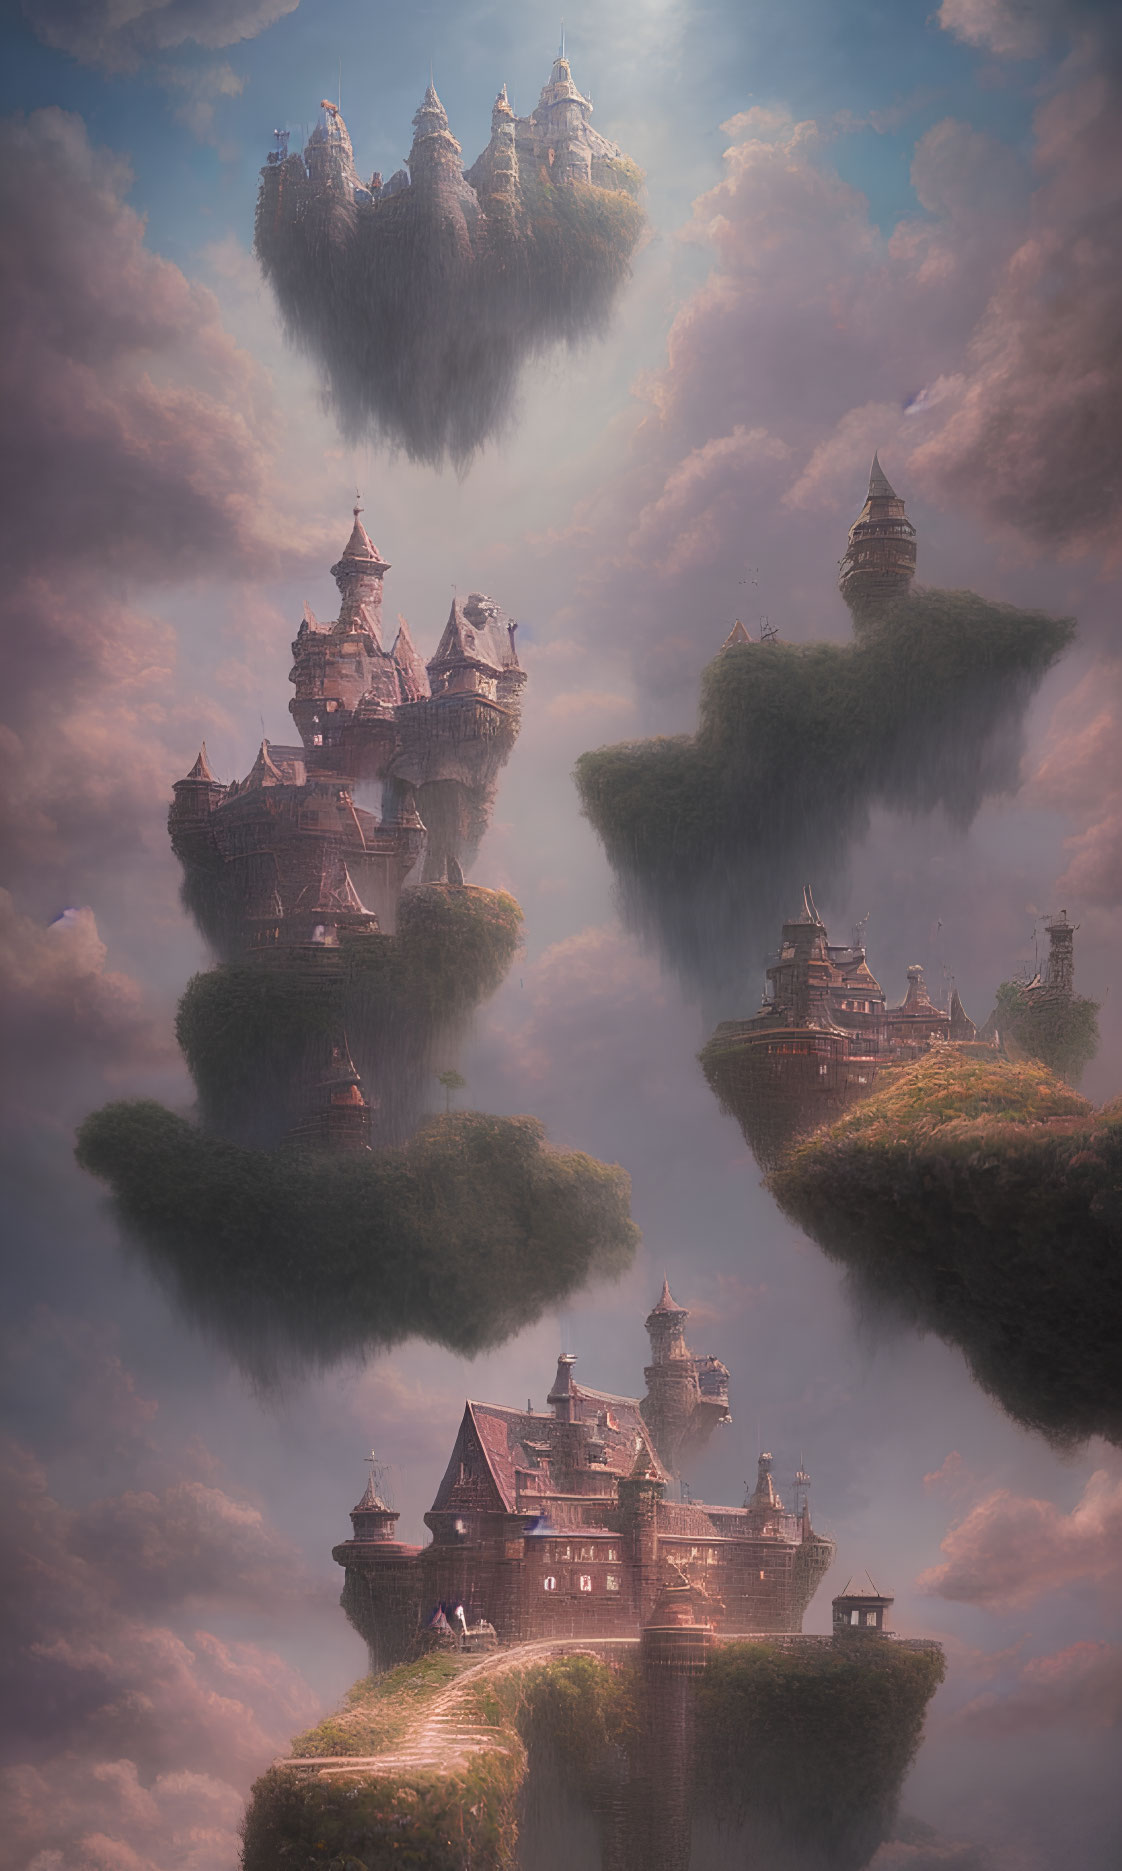 Fantasy castles on floating islands at sunset